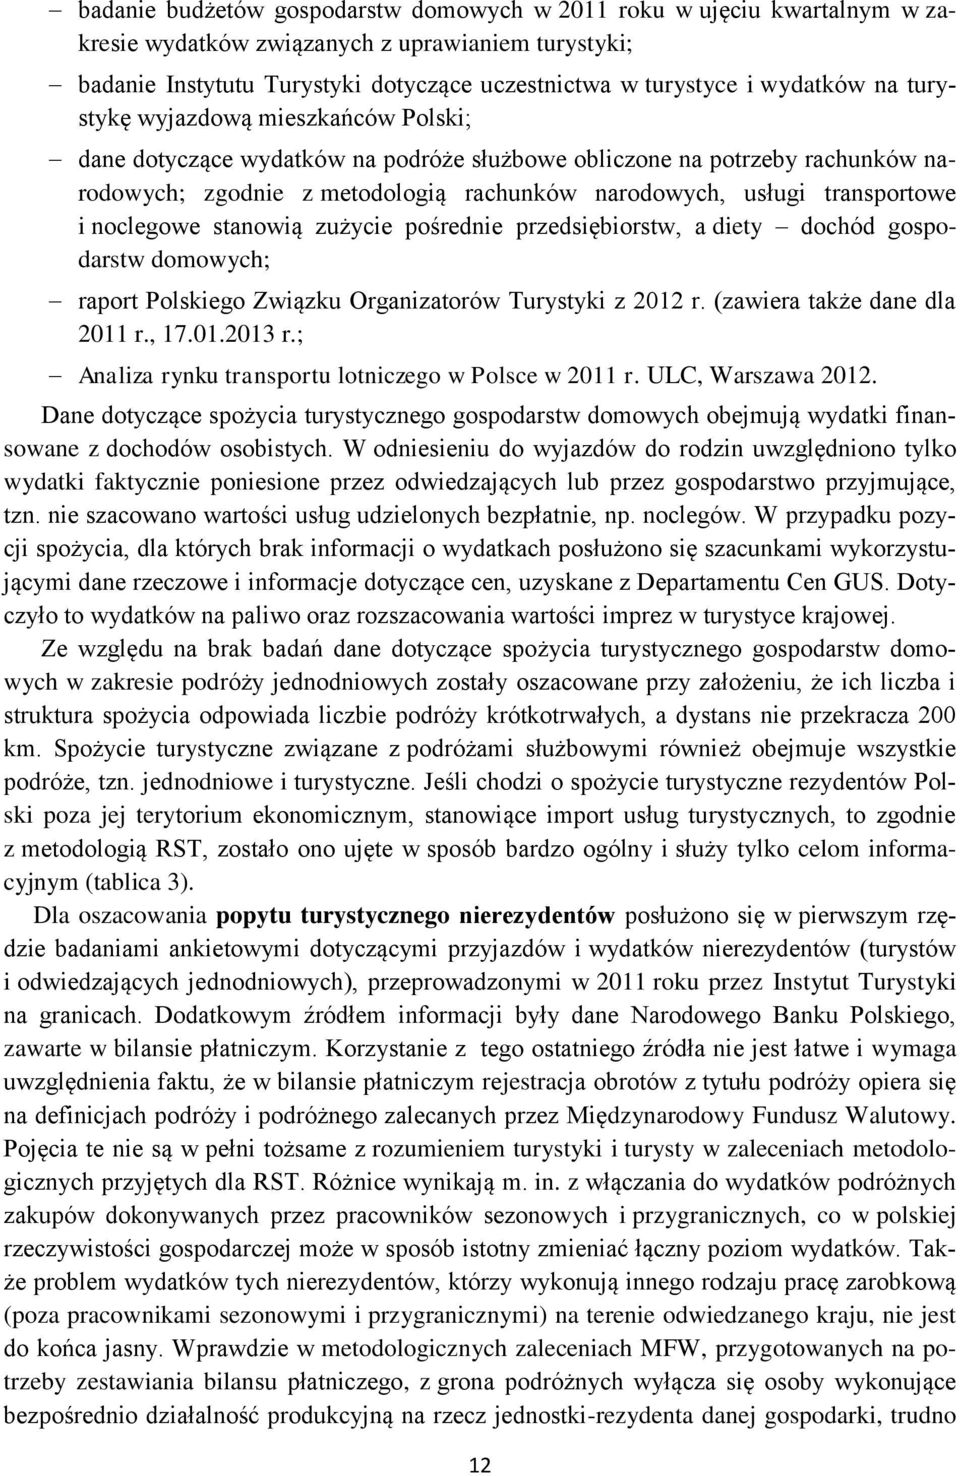 noclegowe stanowią zużycie pośrednie przedsiębiorstw, a diety dochód gospodarstw domowych; raport Polskiego Związku Organizatorów Turystyki z 2012 r. (zawiera także dane dla 2011 r., 17.01.2013 r.